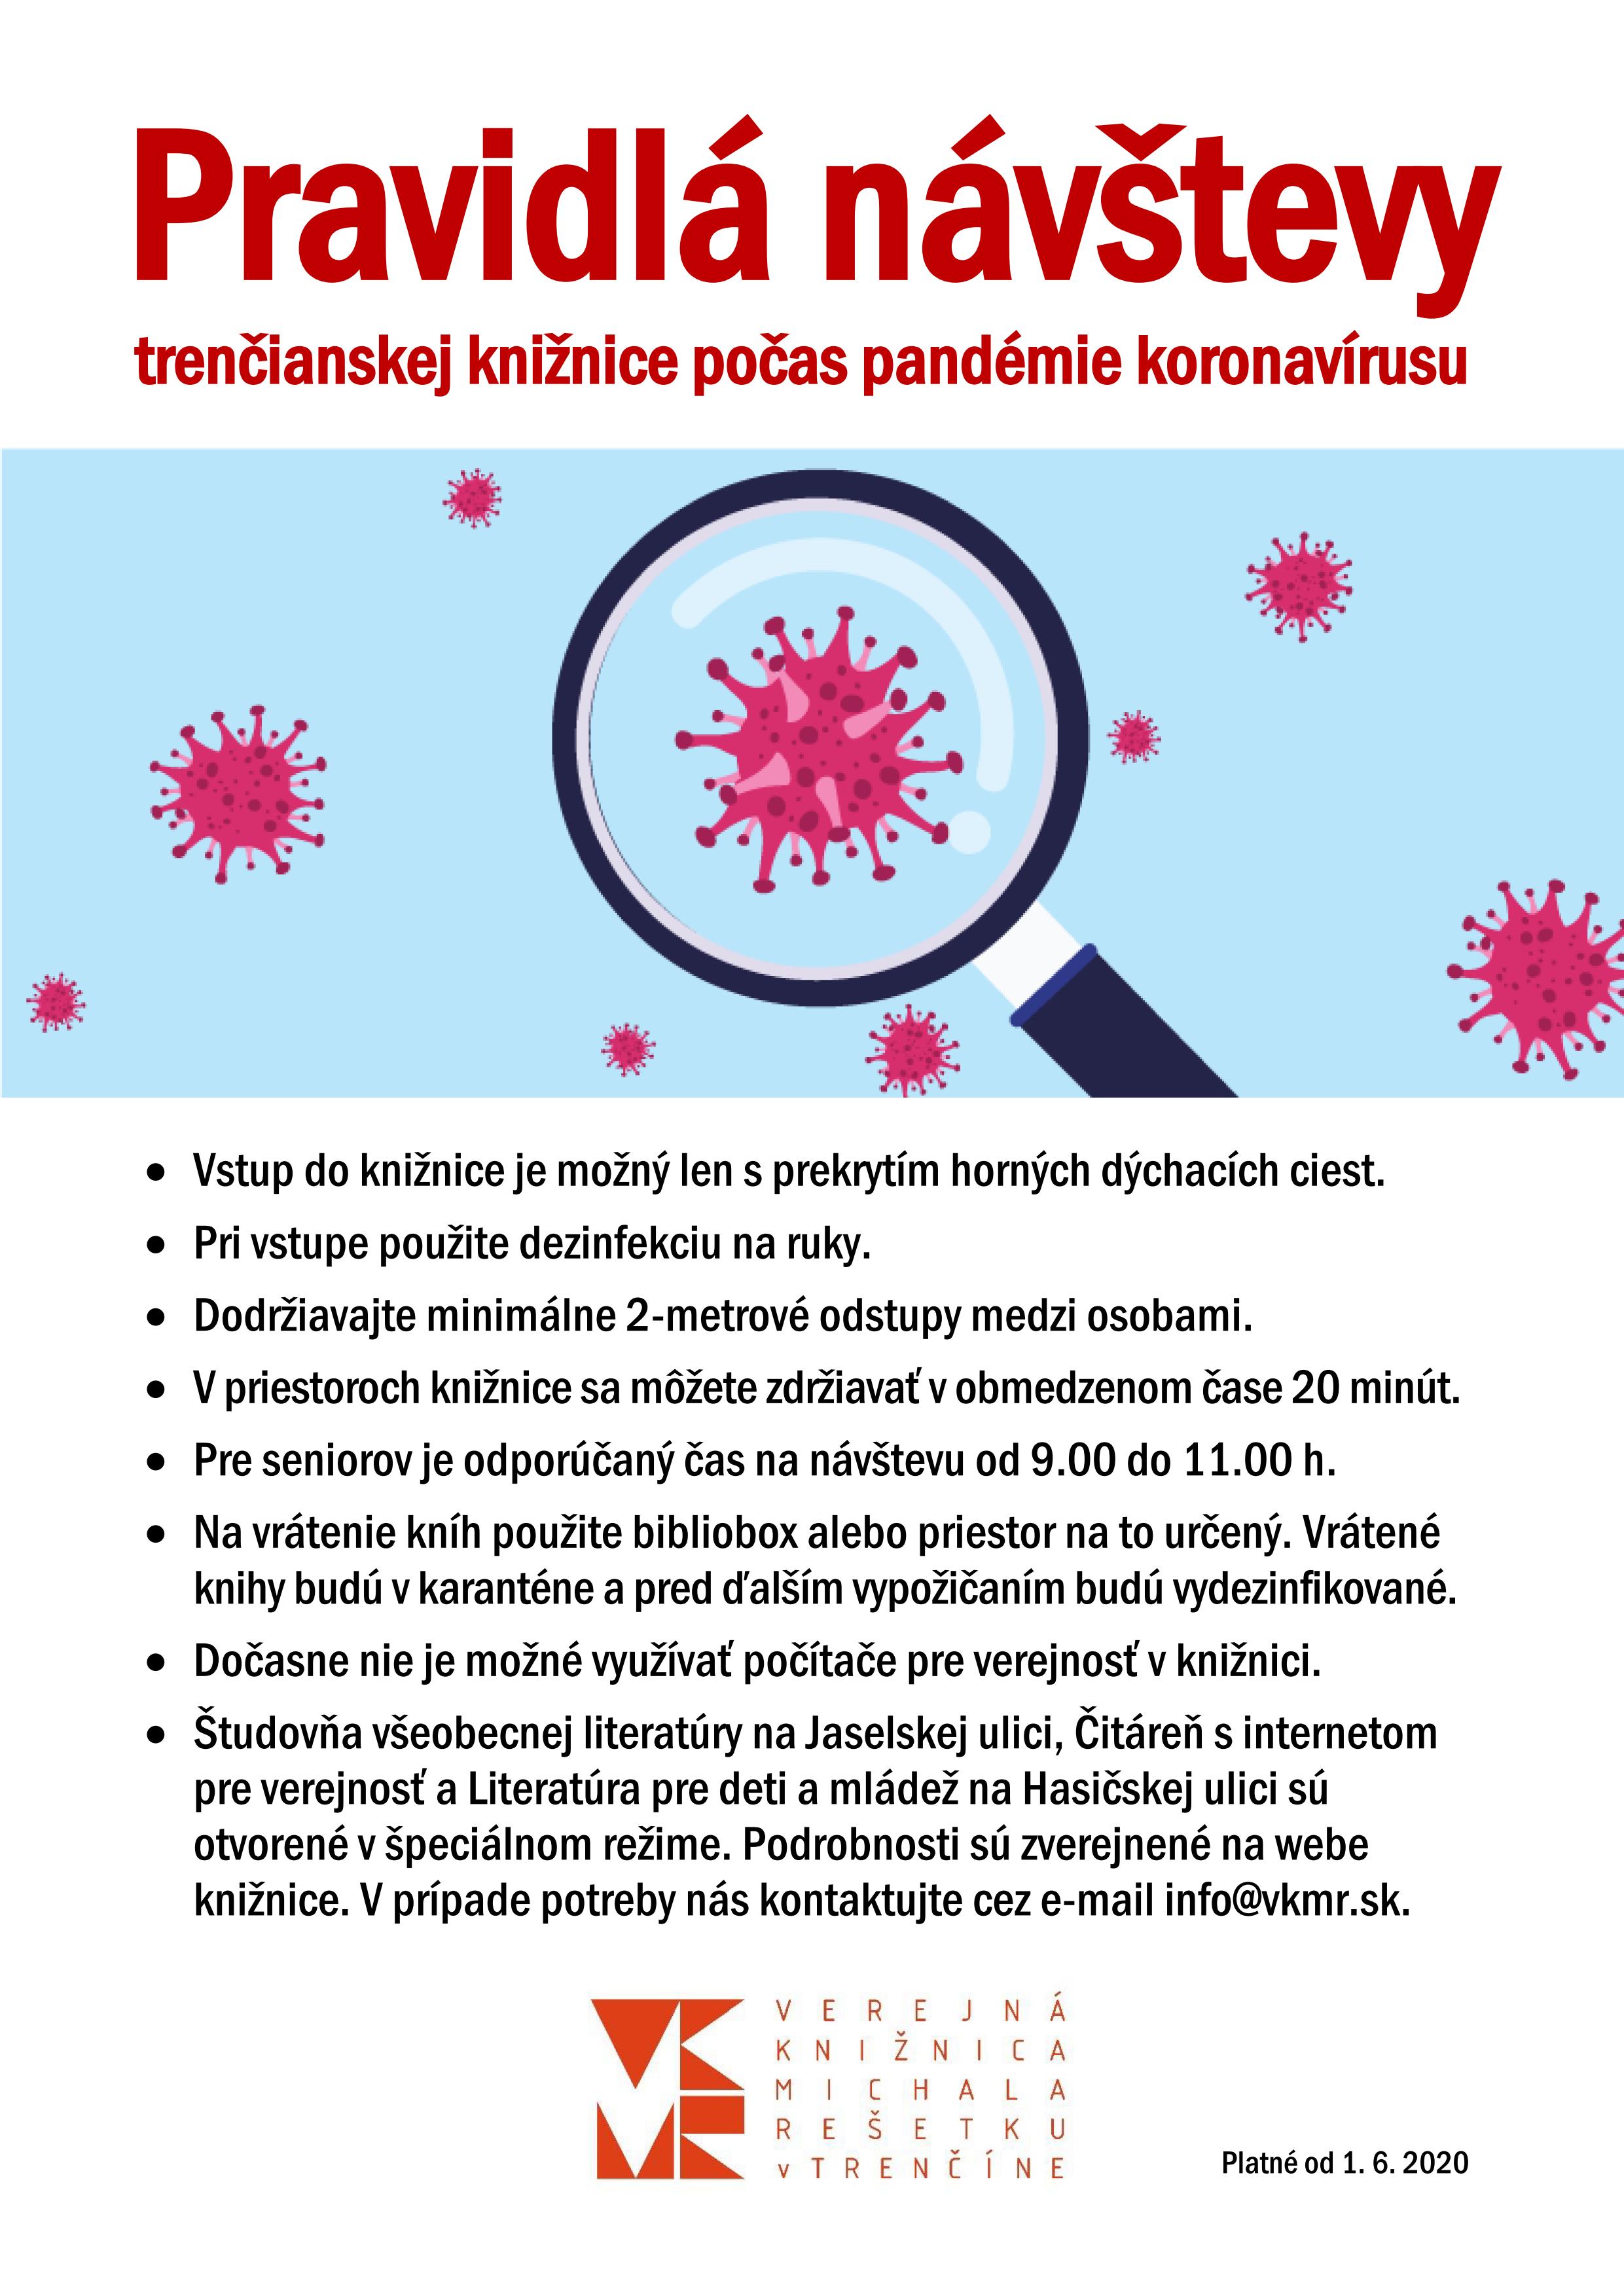 Koronavírus - pravidlá návštevy VKMR, platné od 1. 6. 2020